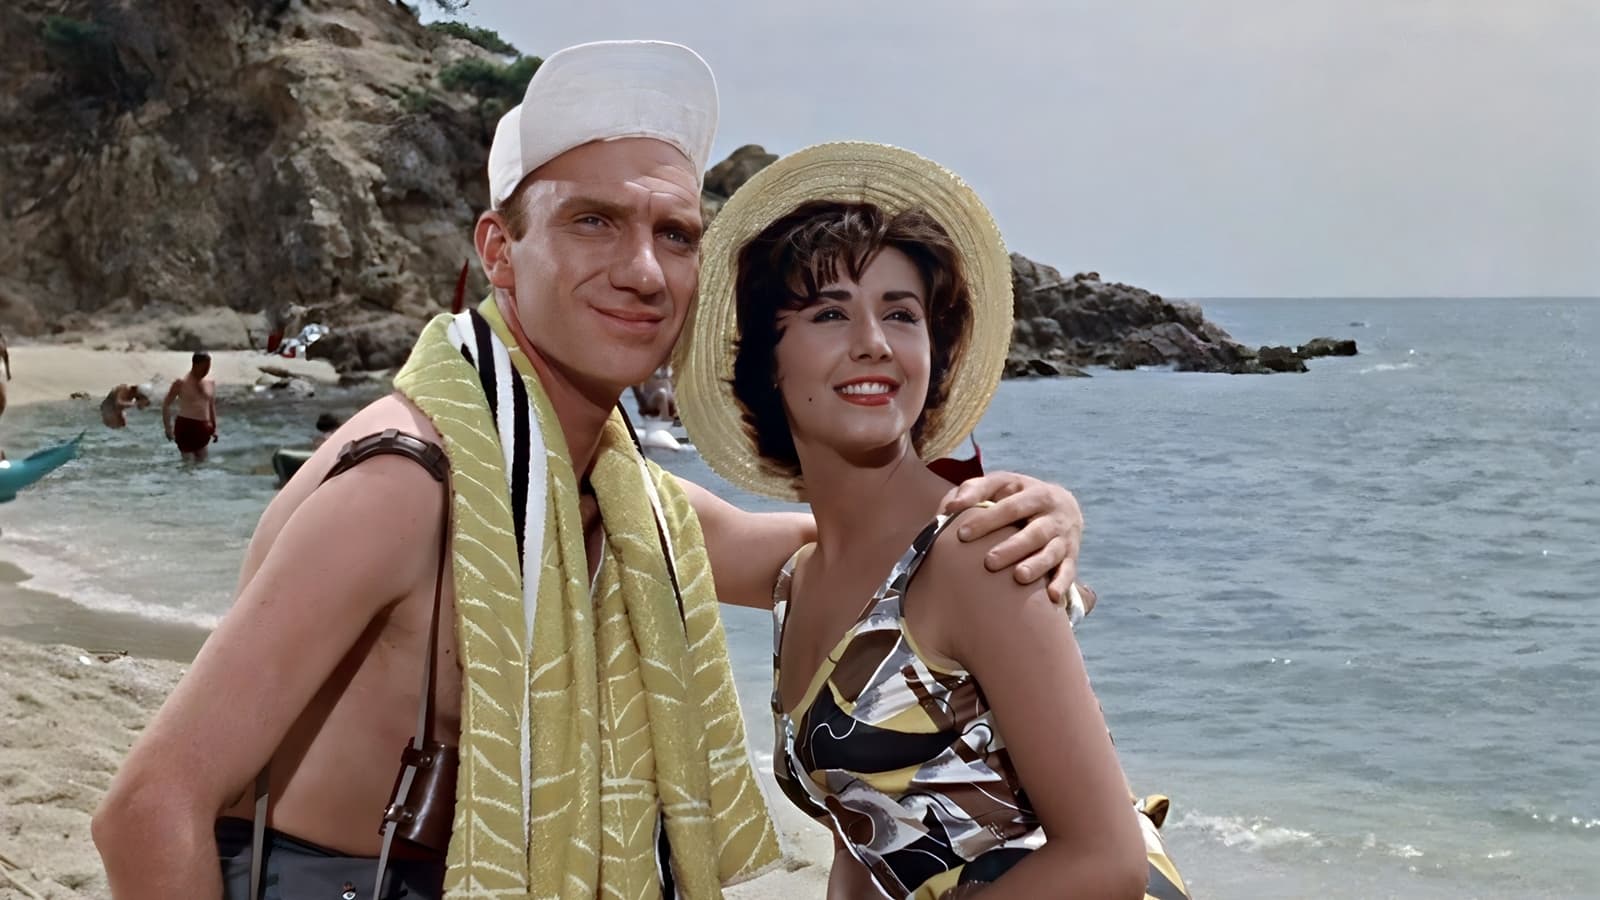 Crimen para recién casados (1960)